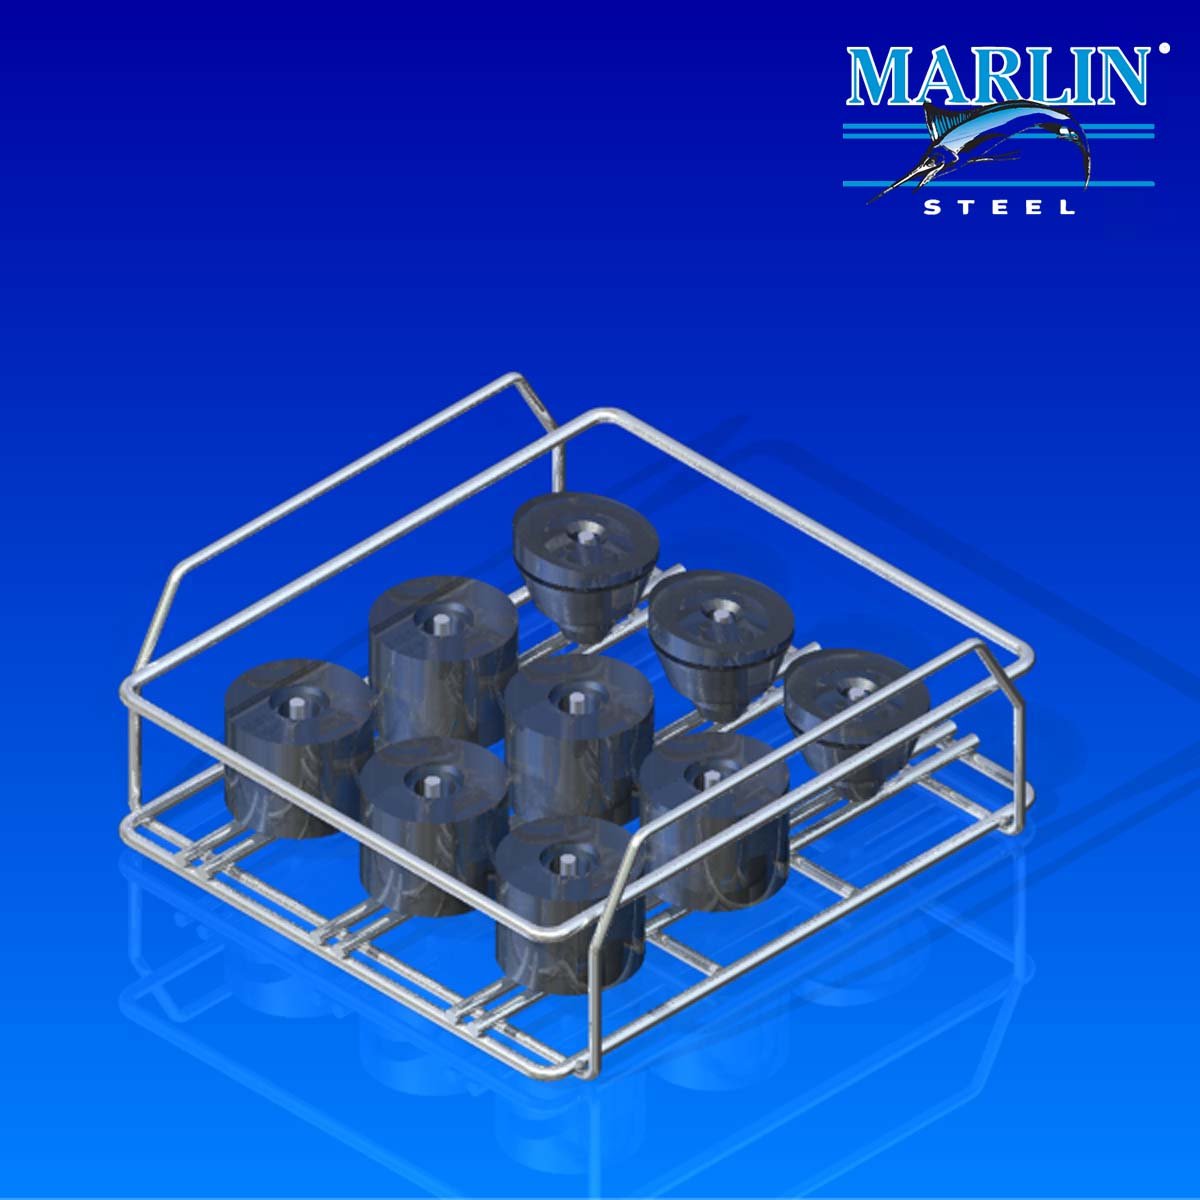 Marlin Steel Material Handling Basket 288004